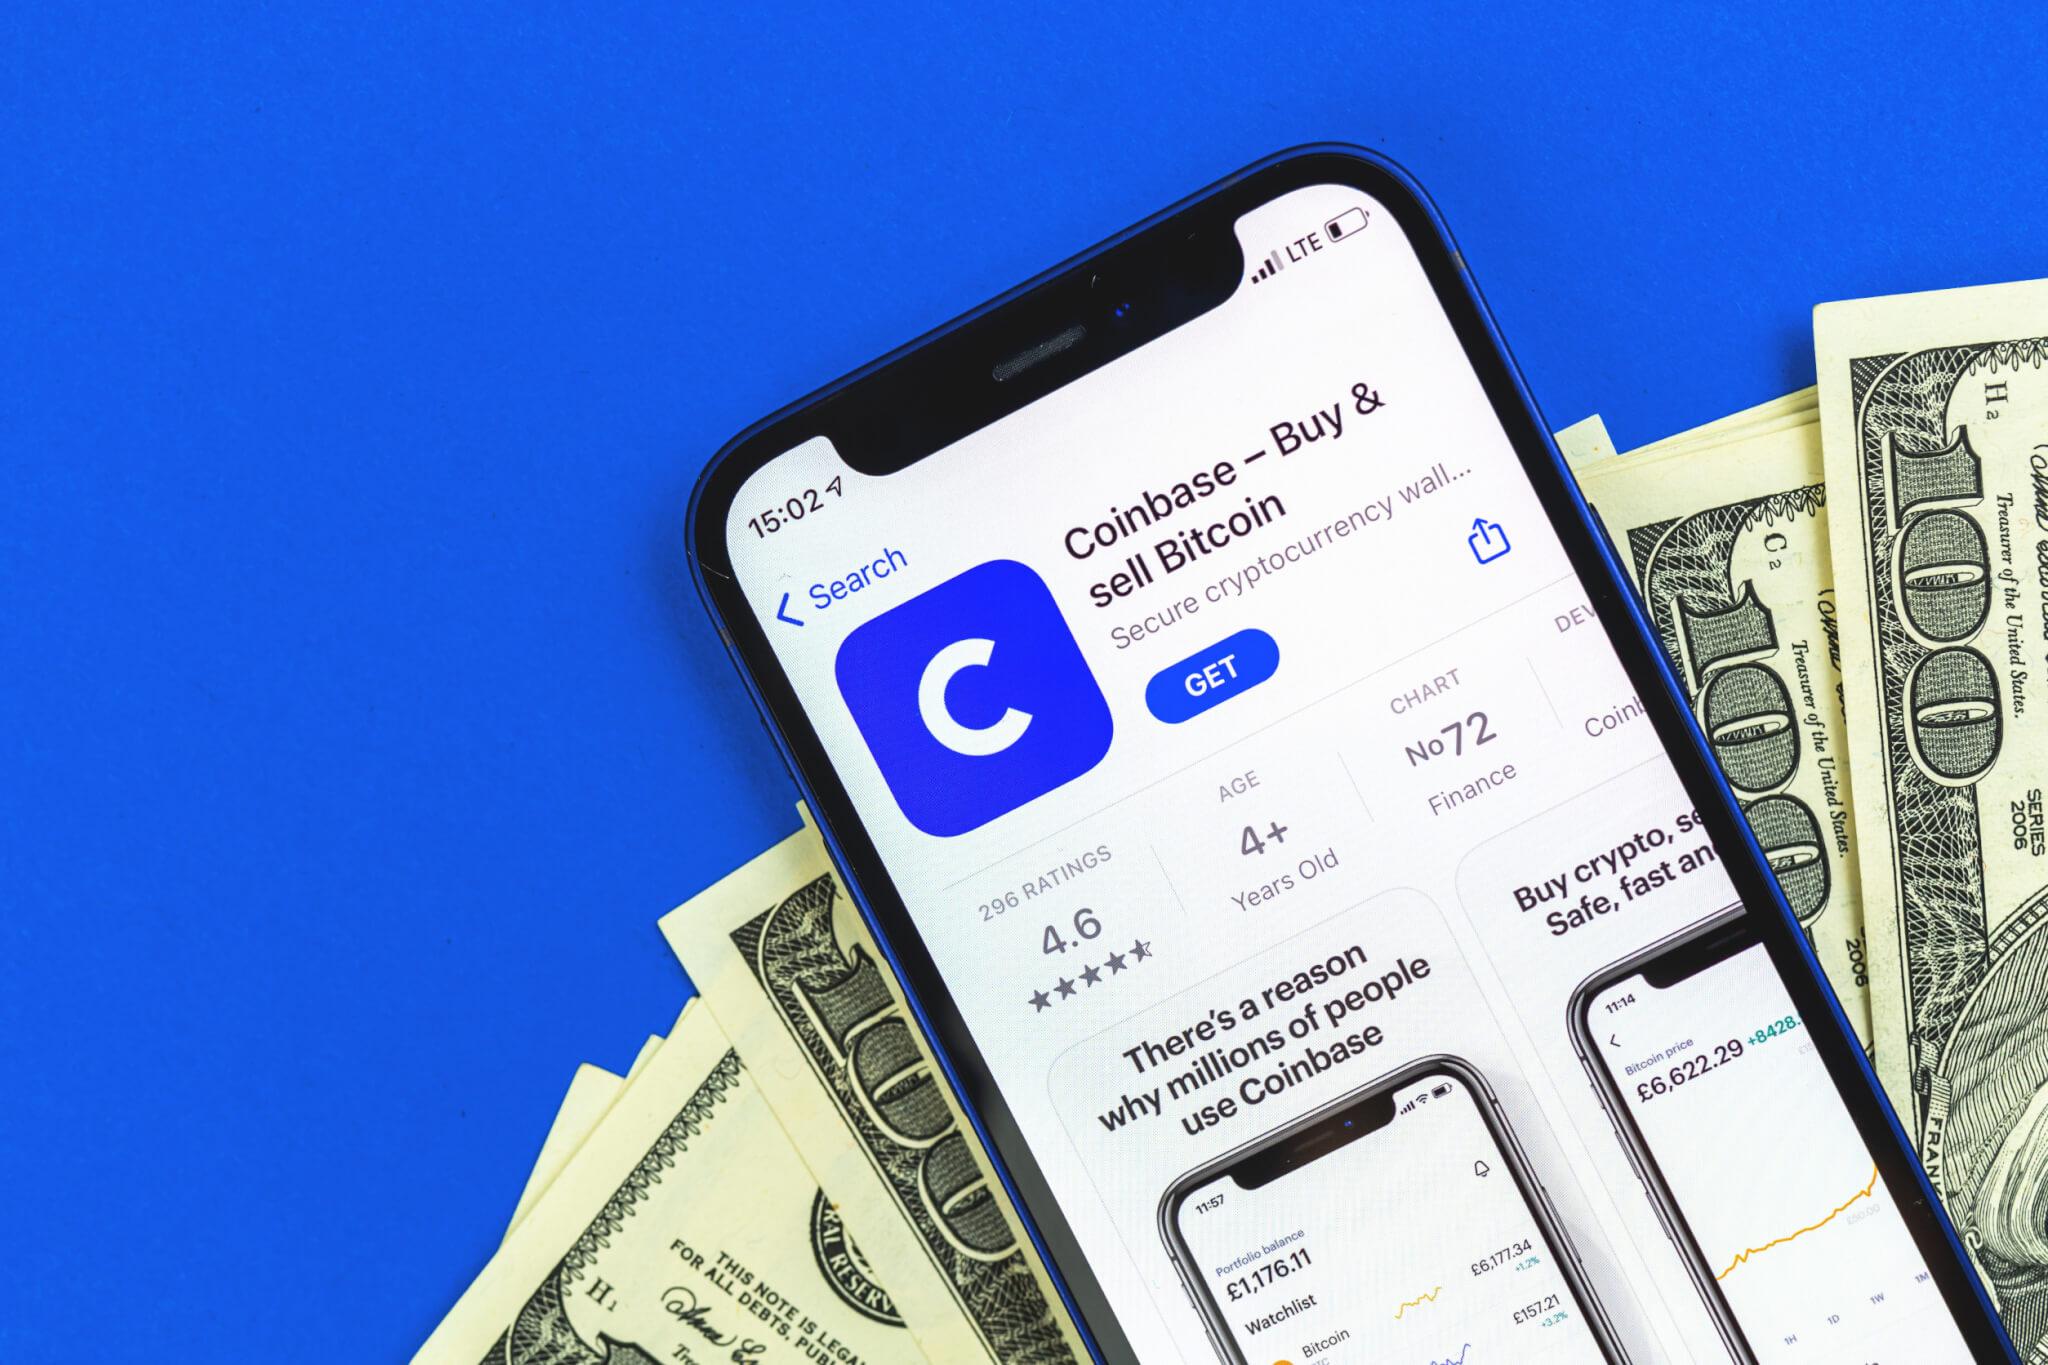 Coinbase, dünyanın önde gelen kripto para borsalarından biridir ve kullanıcılara kripto para birimleri alımı, satımı, takası ve saklaması konularında hizmet verir.